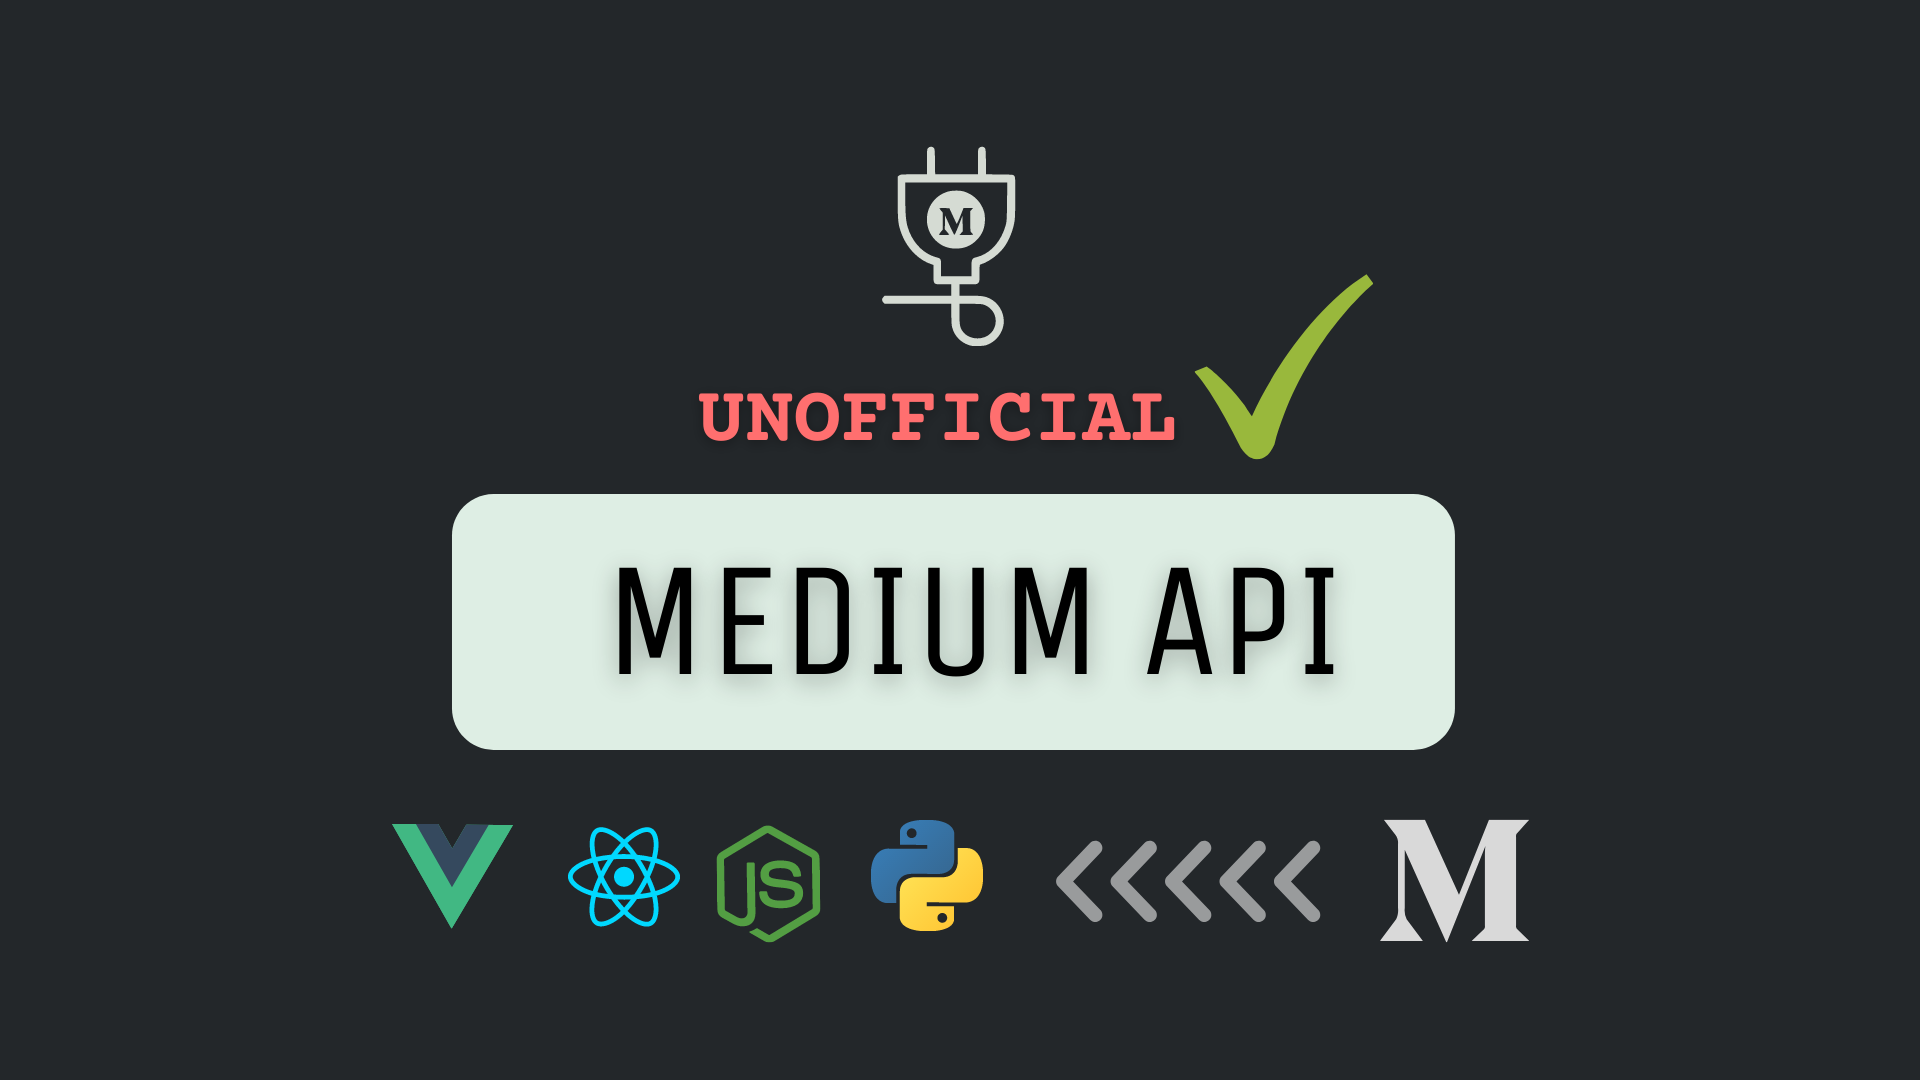 What is Medium API?